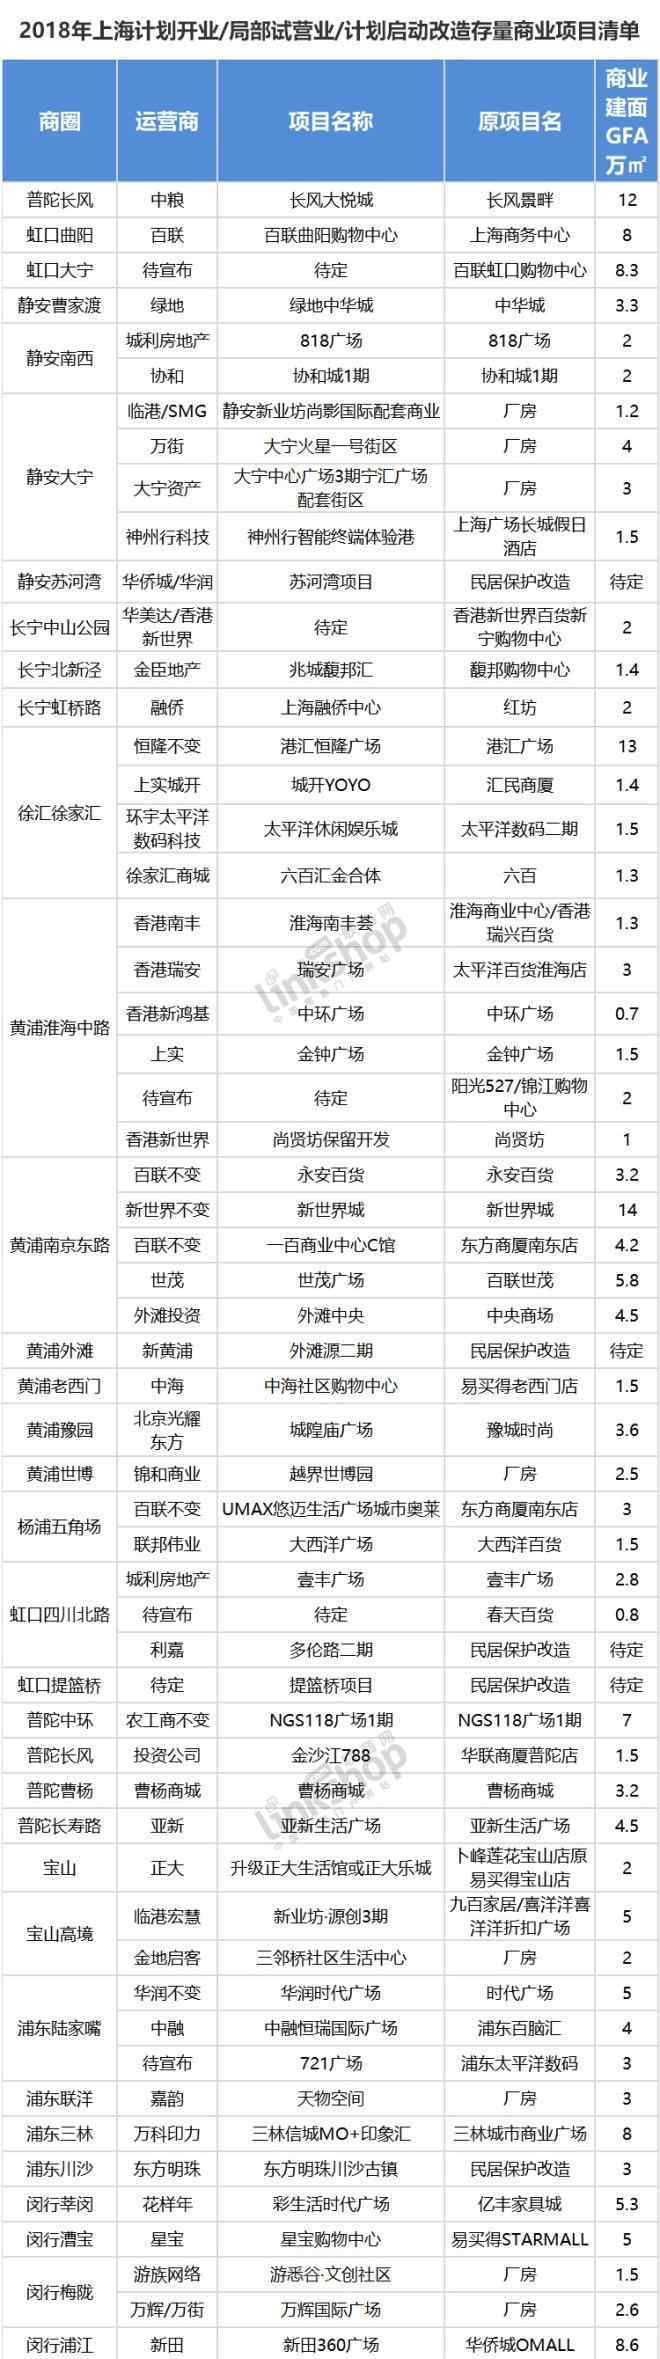 中环百联电影院 2018上海存量商业改造十大最值得关注的项目